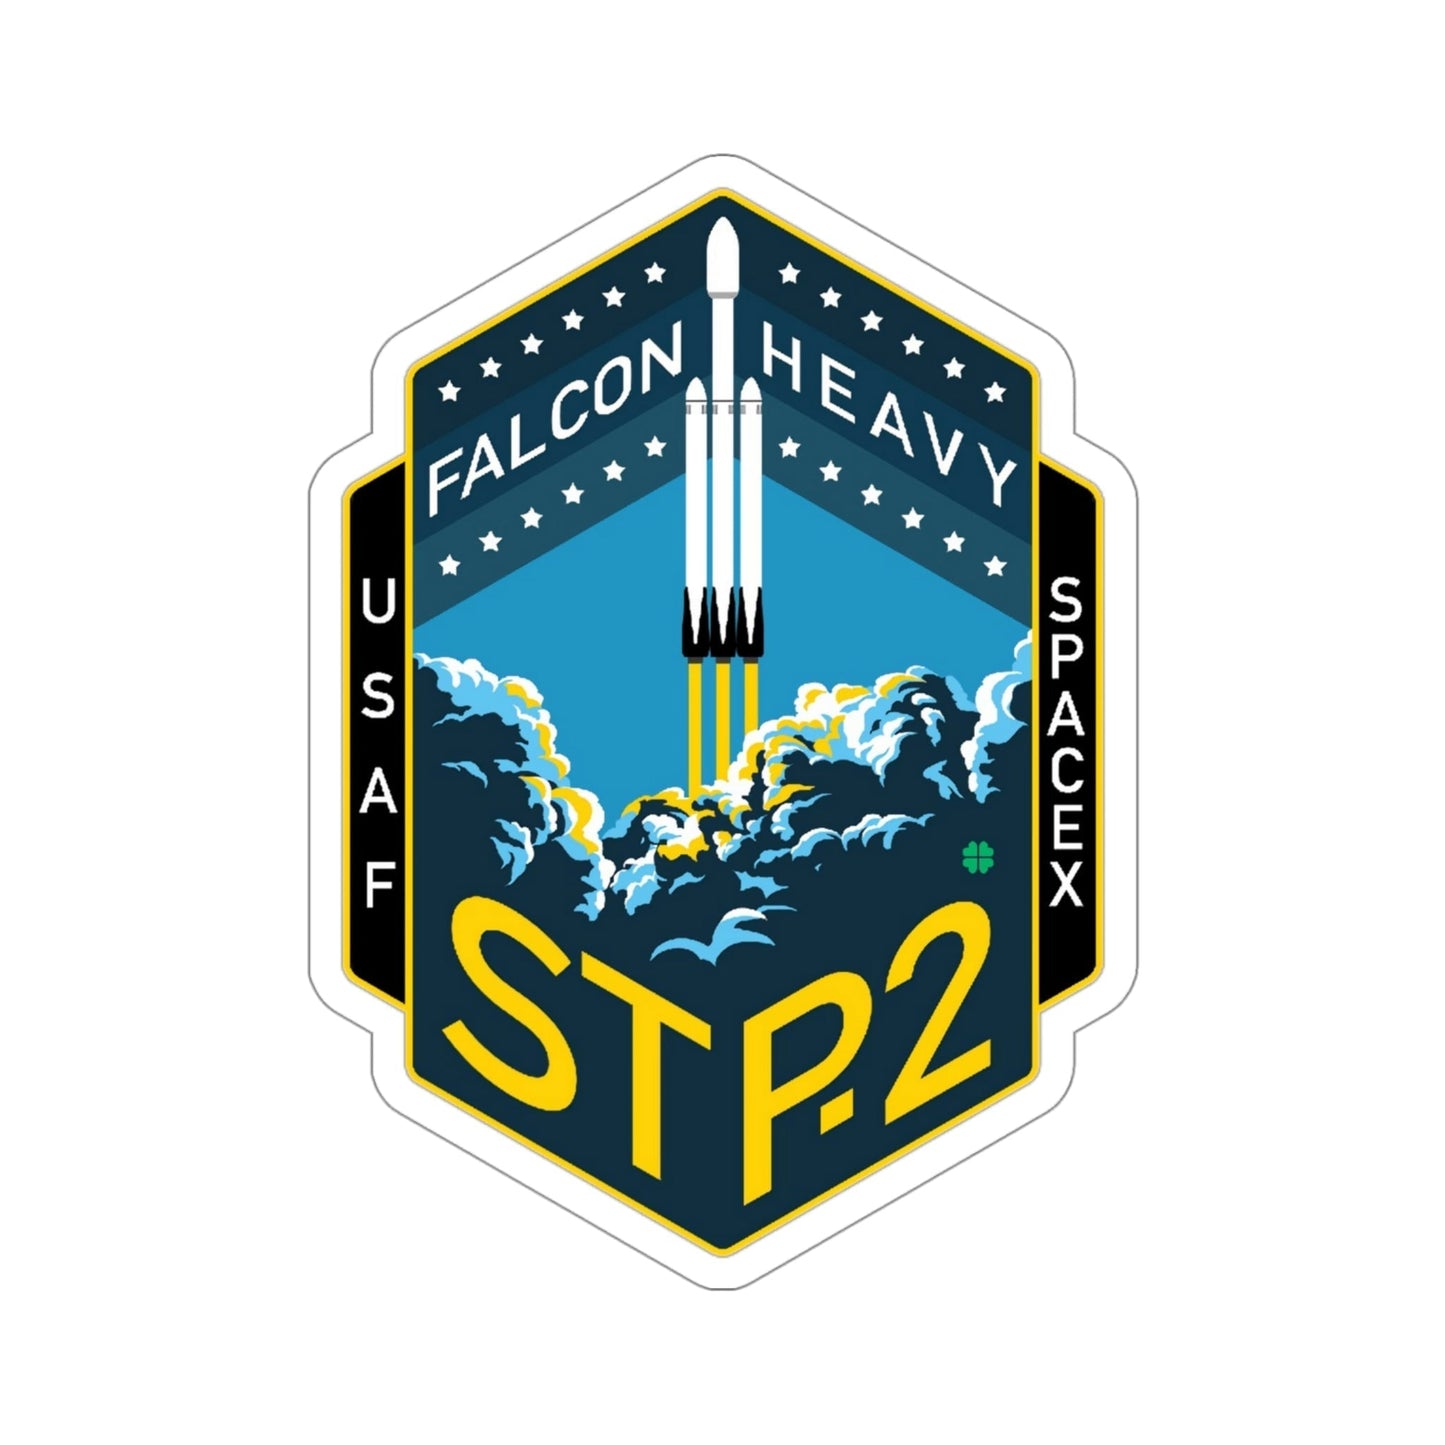 STP-2 (SpaceX) STICKER Vinyl Die-Cut Decal-4 Inch-The Sticker Space